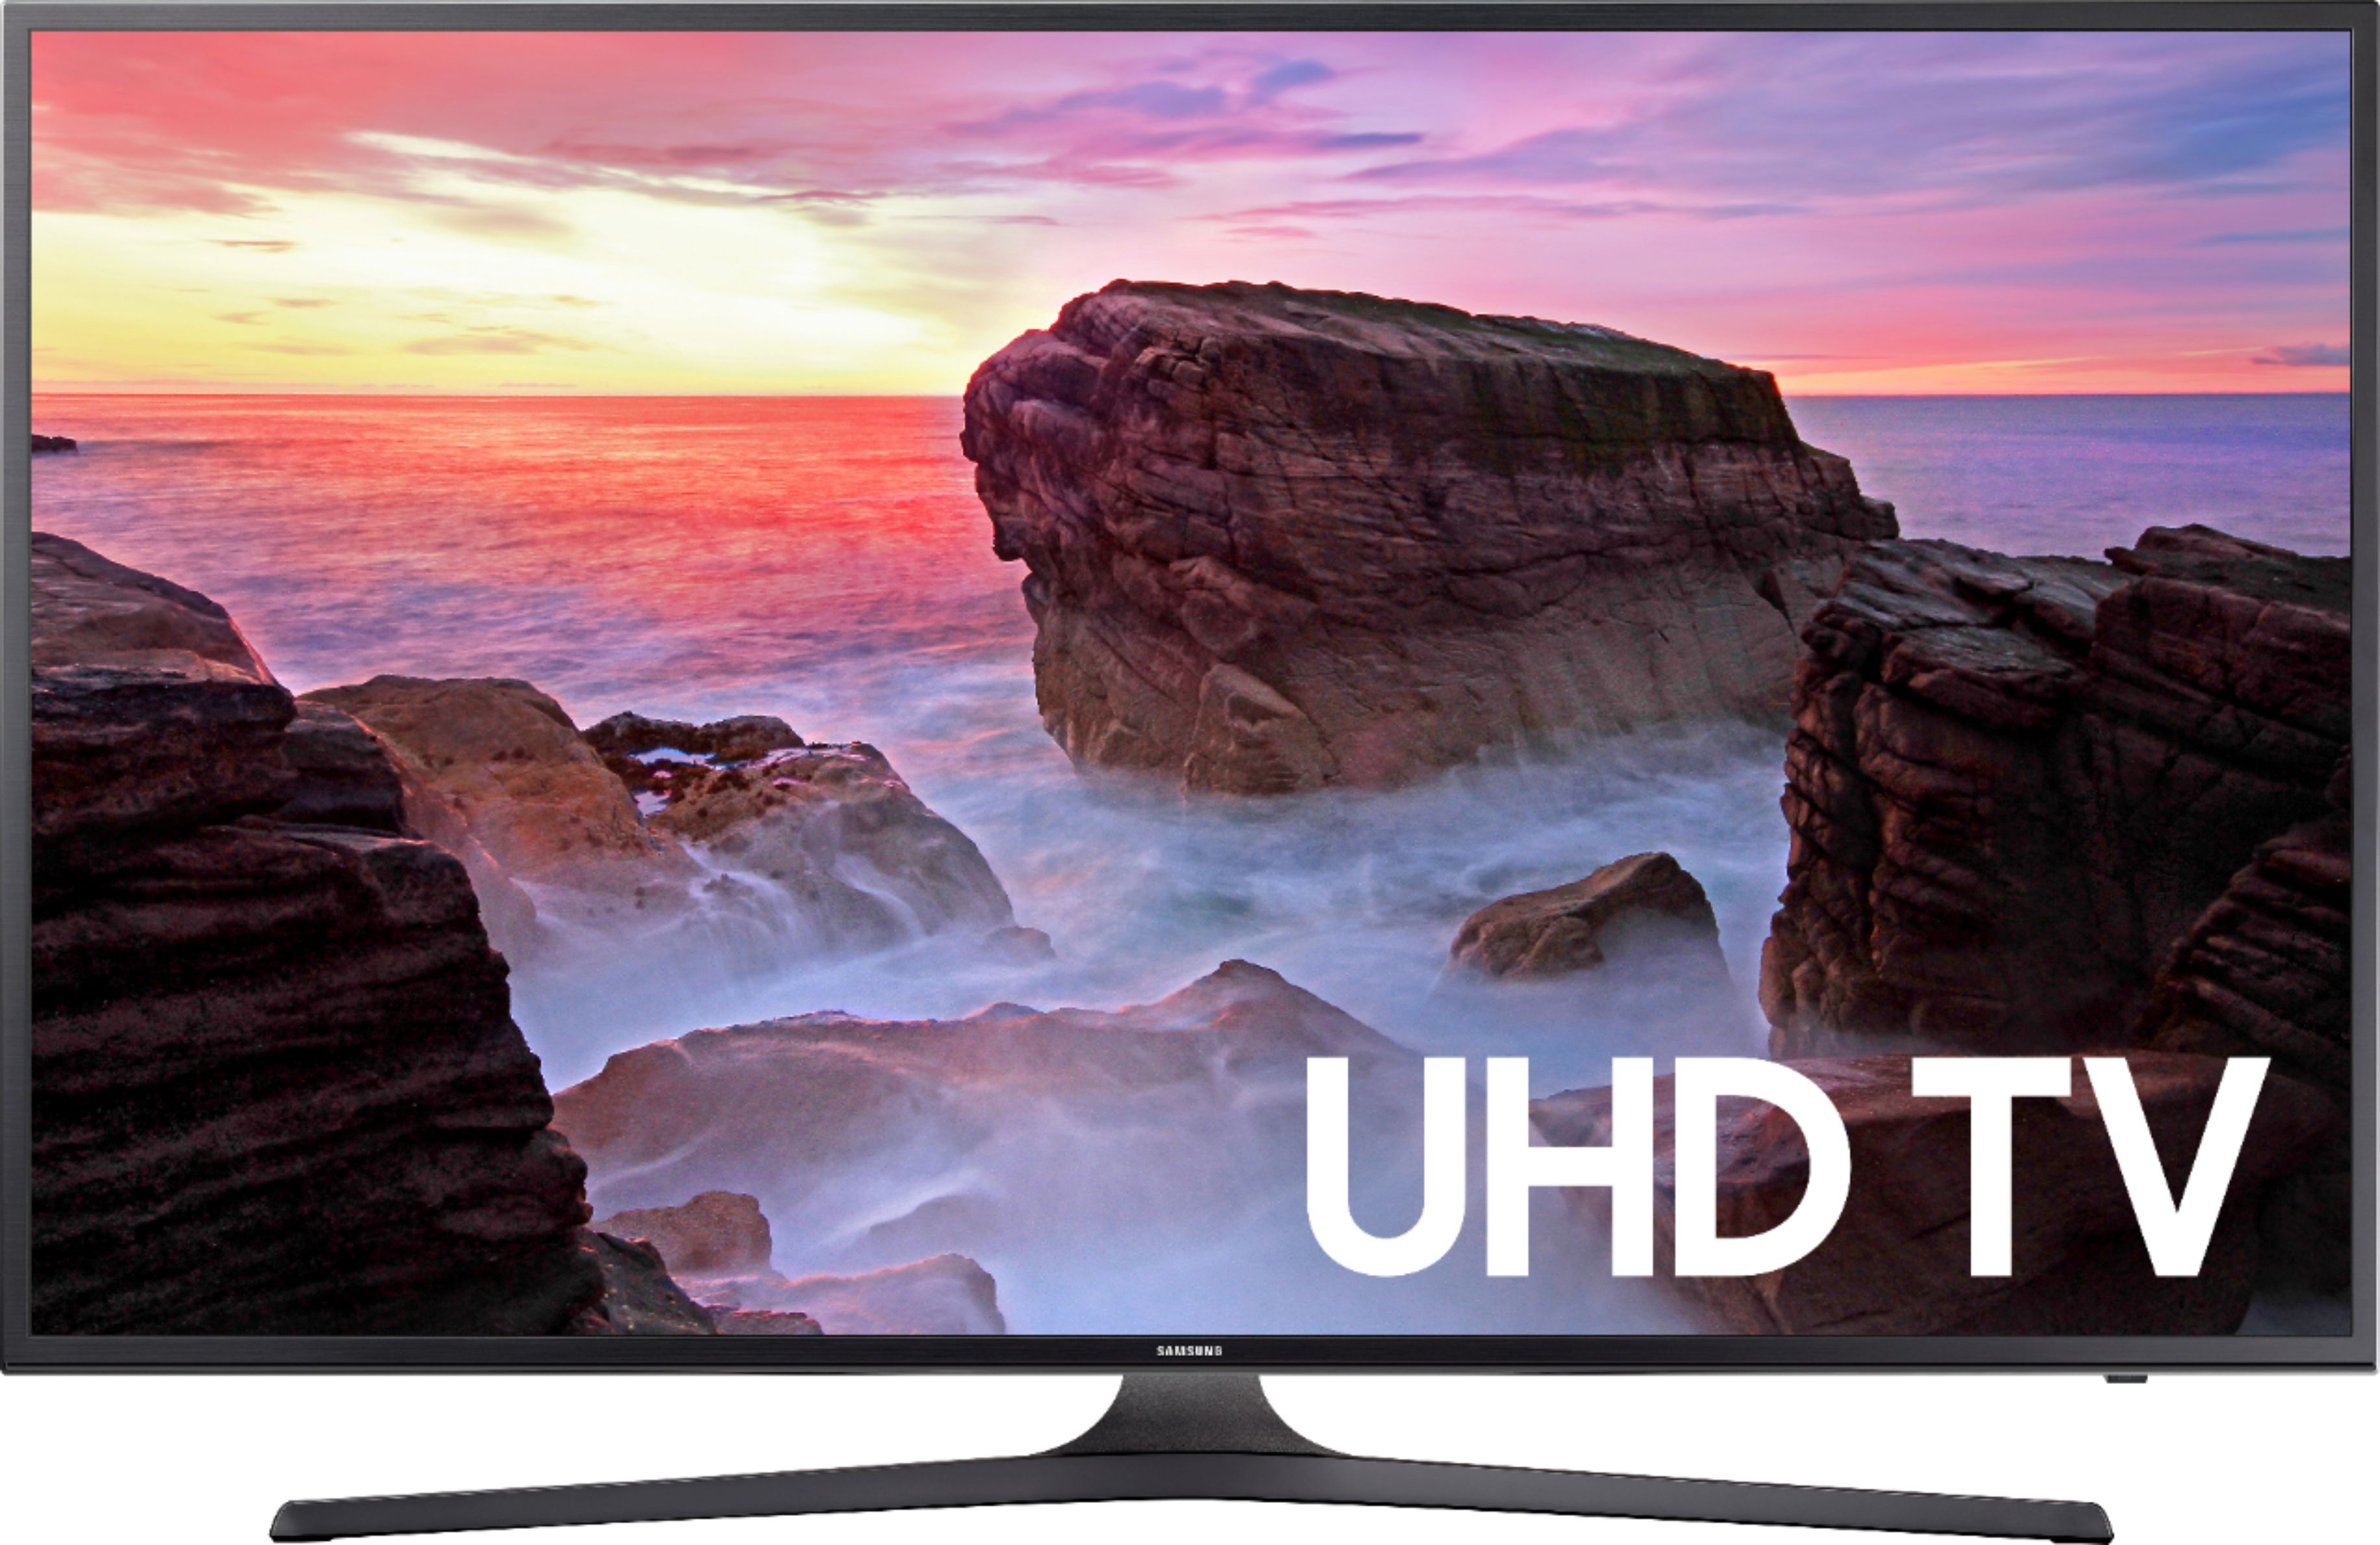 sammensværgelse Pest på trods af Samsung 65" Class LED MU6300 Series 2160p Smart 4K Ultra HD TV with HDR  UN65MU6300FXZA - Best Buy